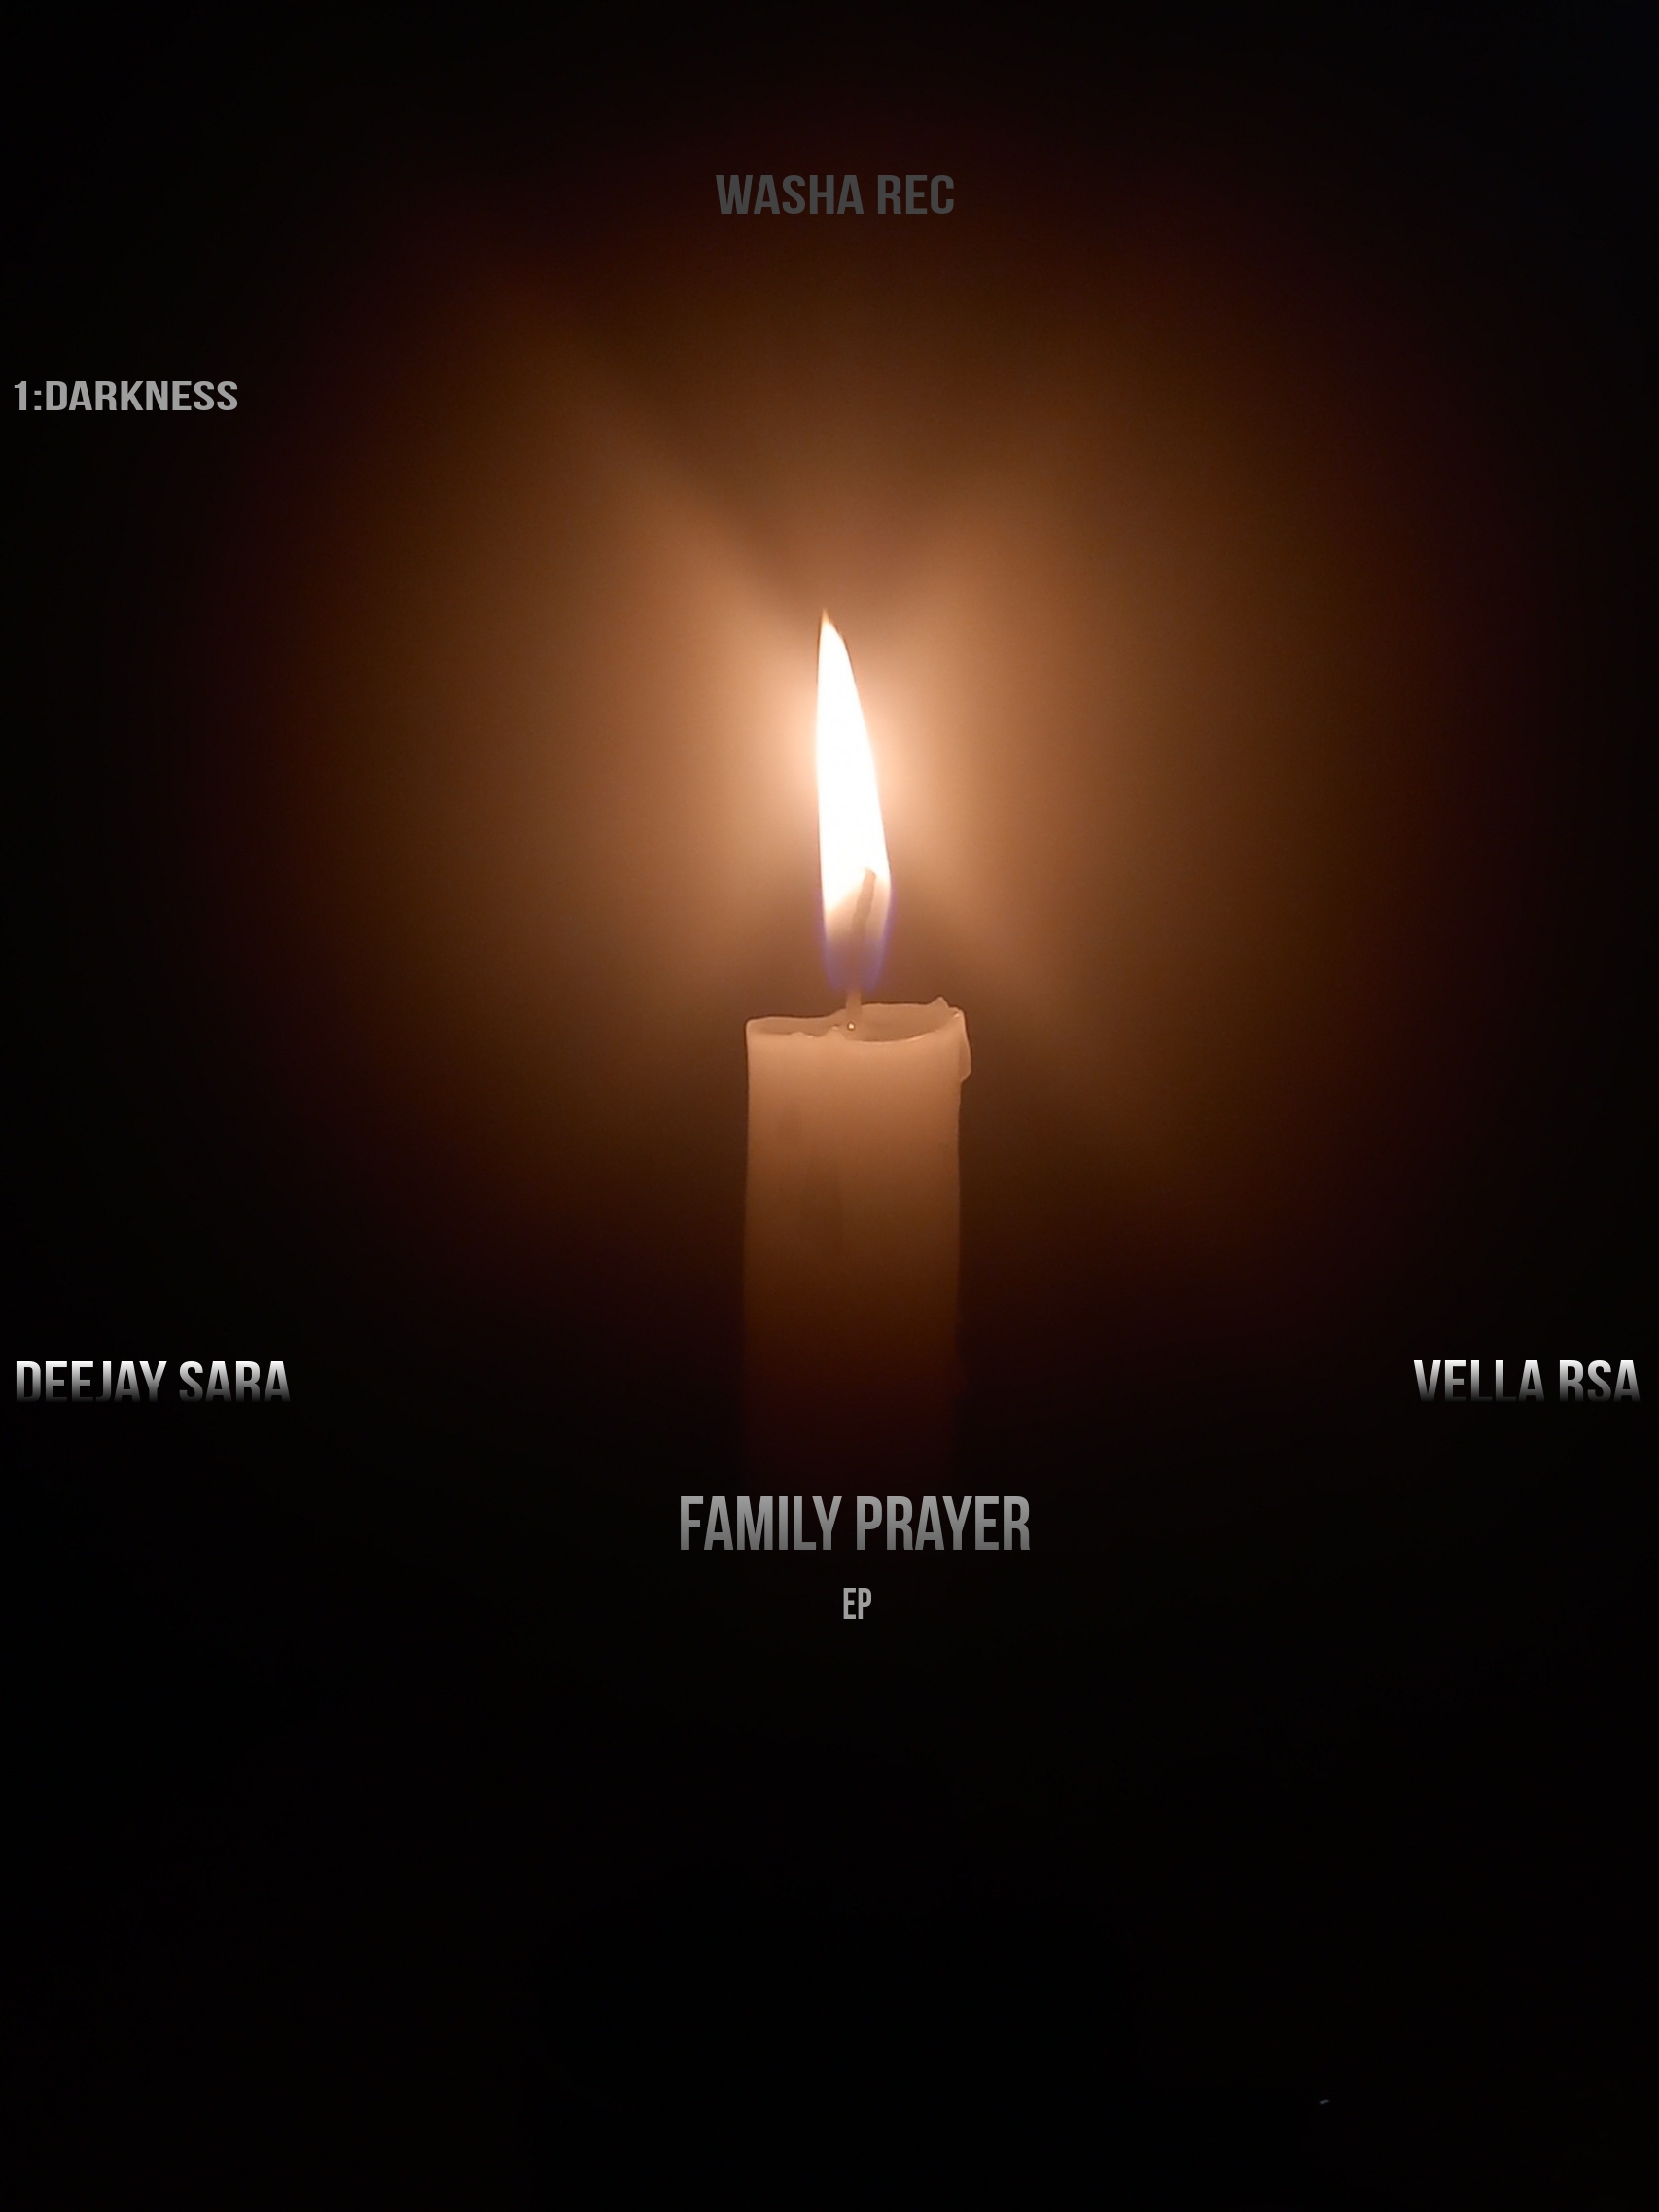 FAMILY PRAYER - DeeJay Sara ft Vela Ras (washa rec)